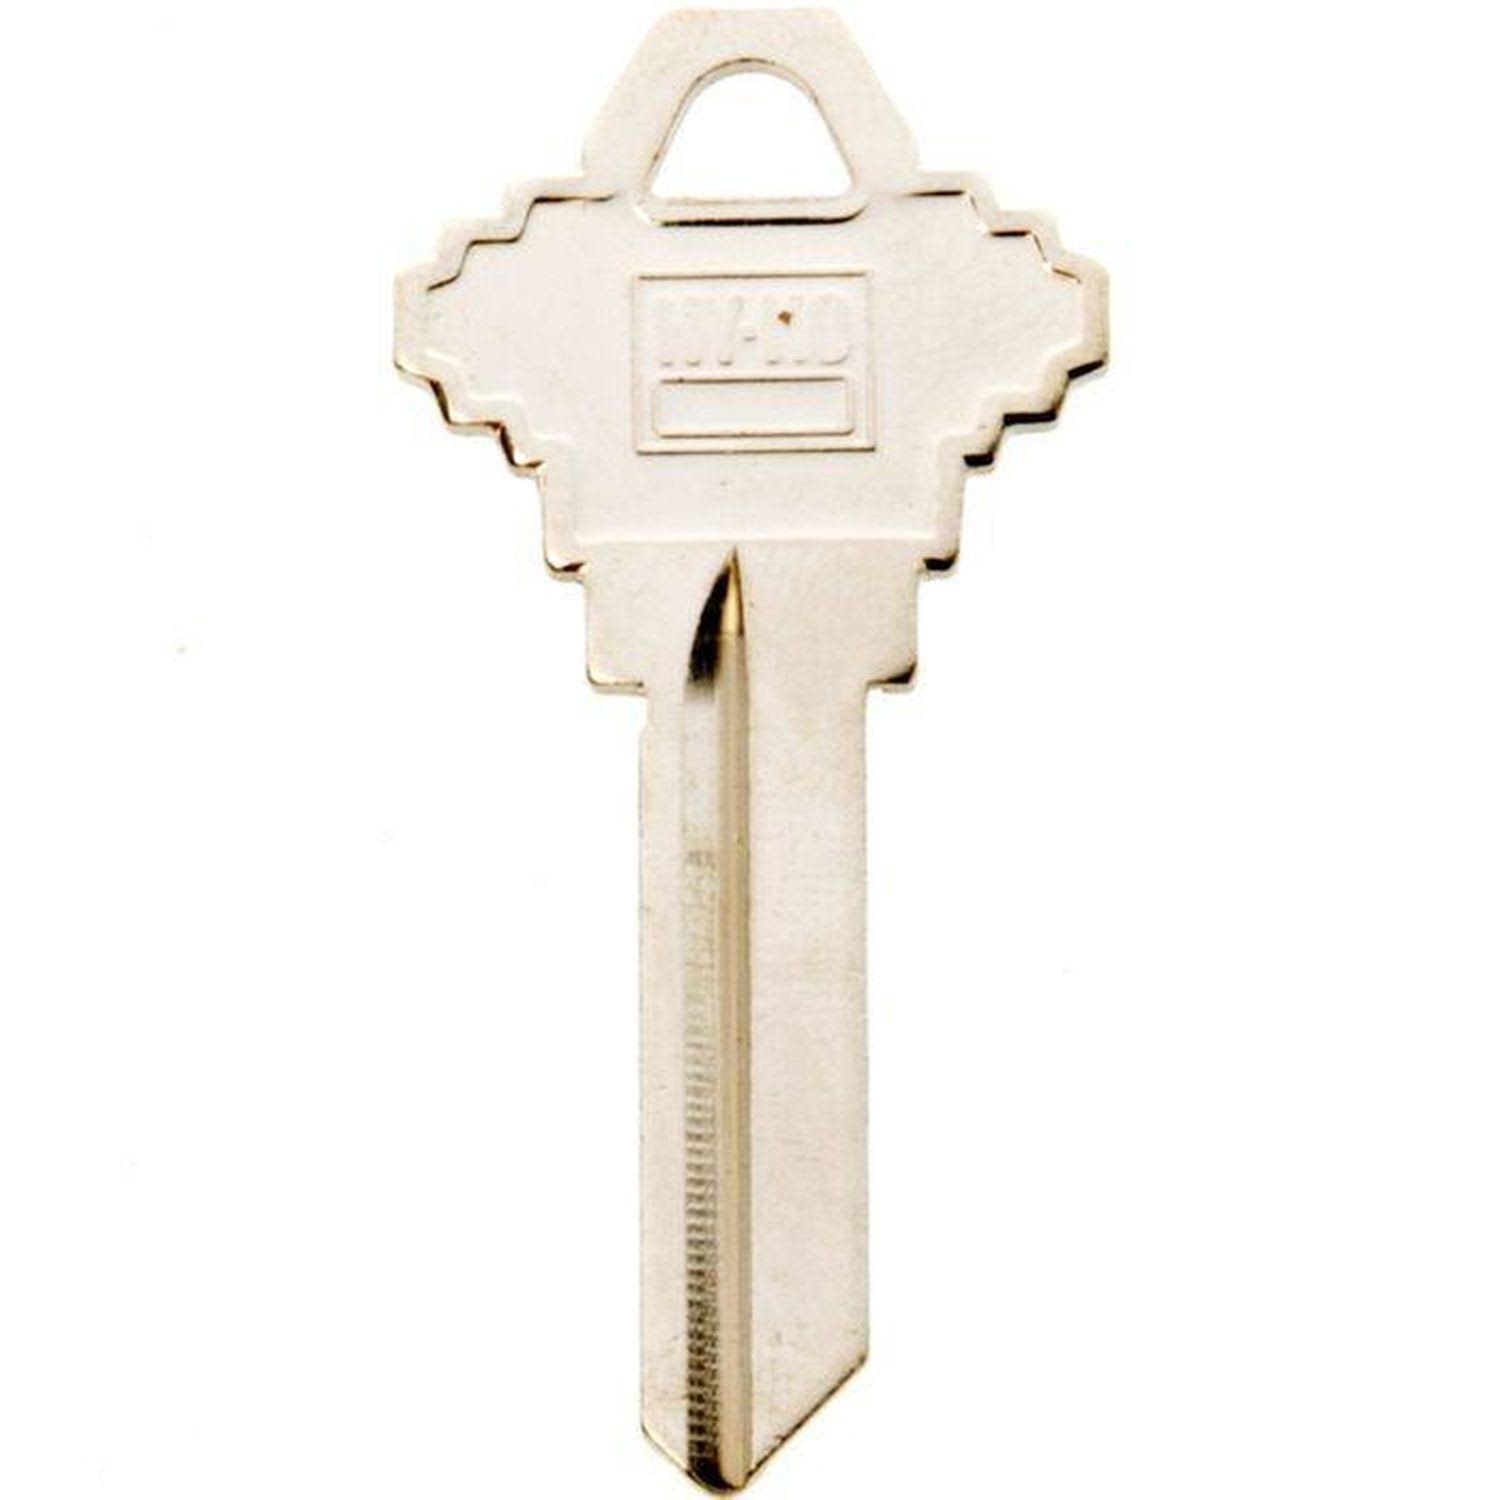 Hy-Ko 11010SC4 Blank Schlage Lock Key